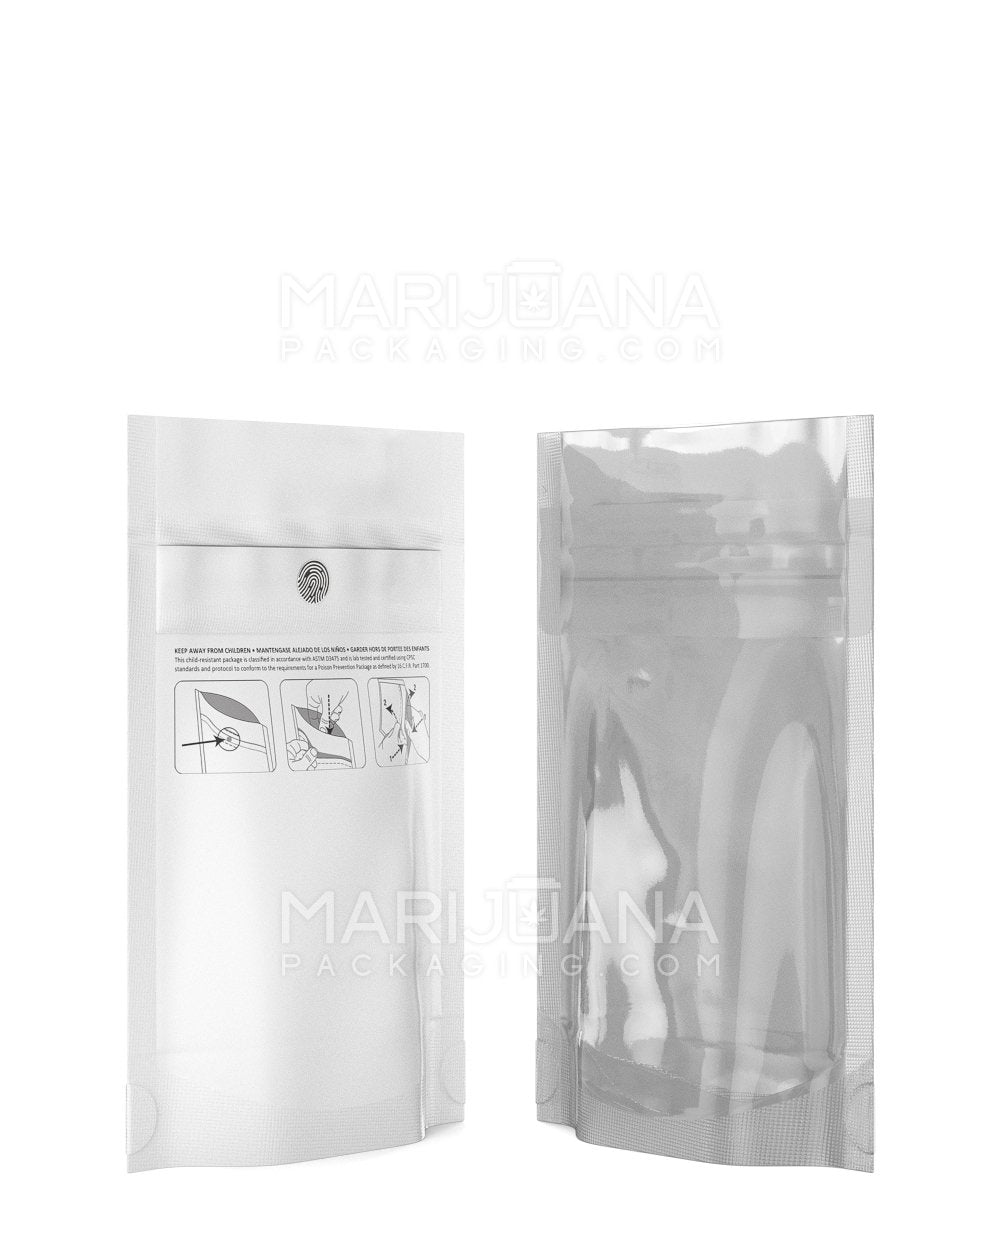 Child Resistant & Tamper Evident DymaPak Vista White Mylar Bag | 3.6in x 5.8in - 3.5g | Sample - 2